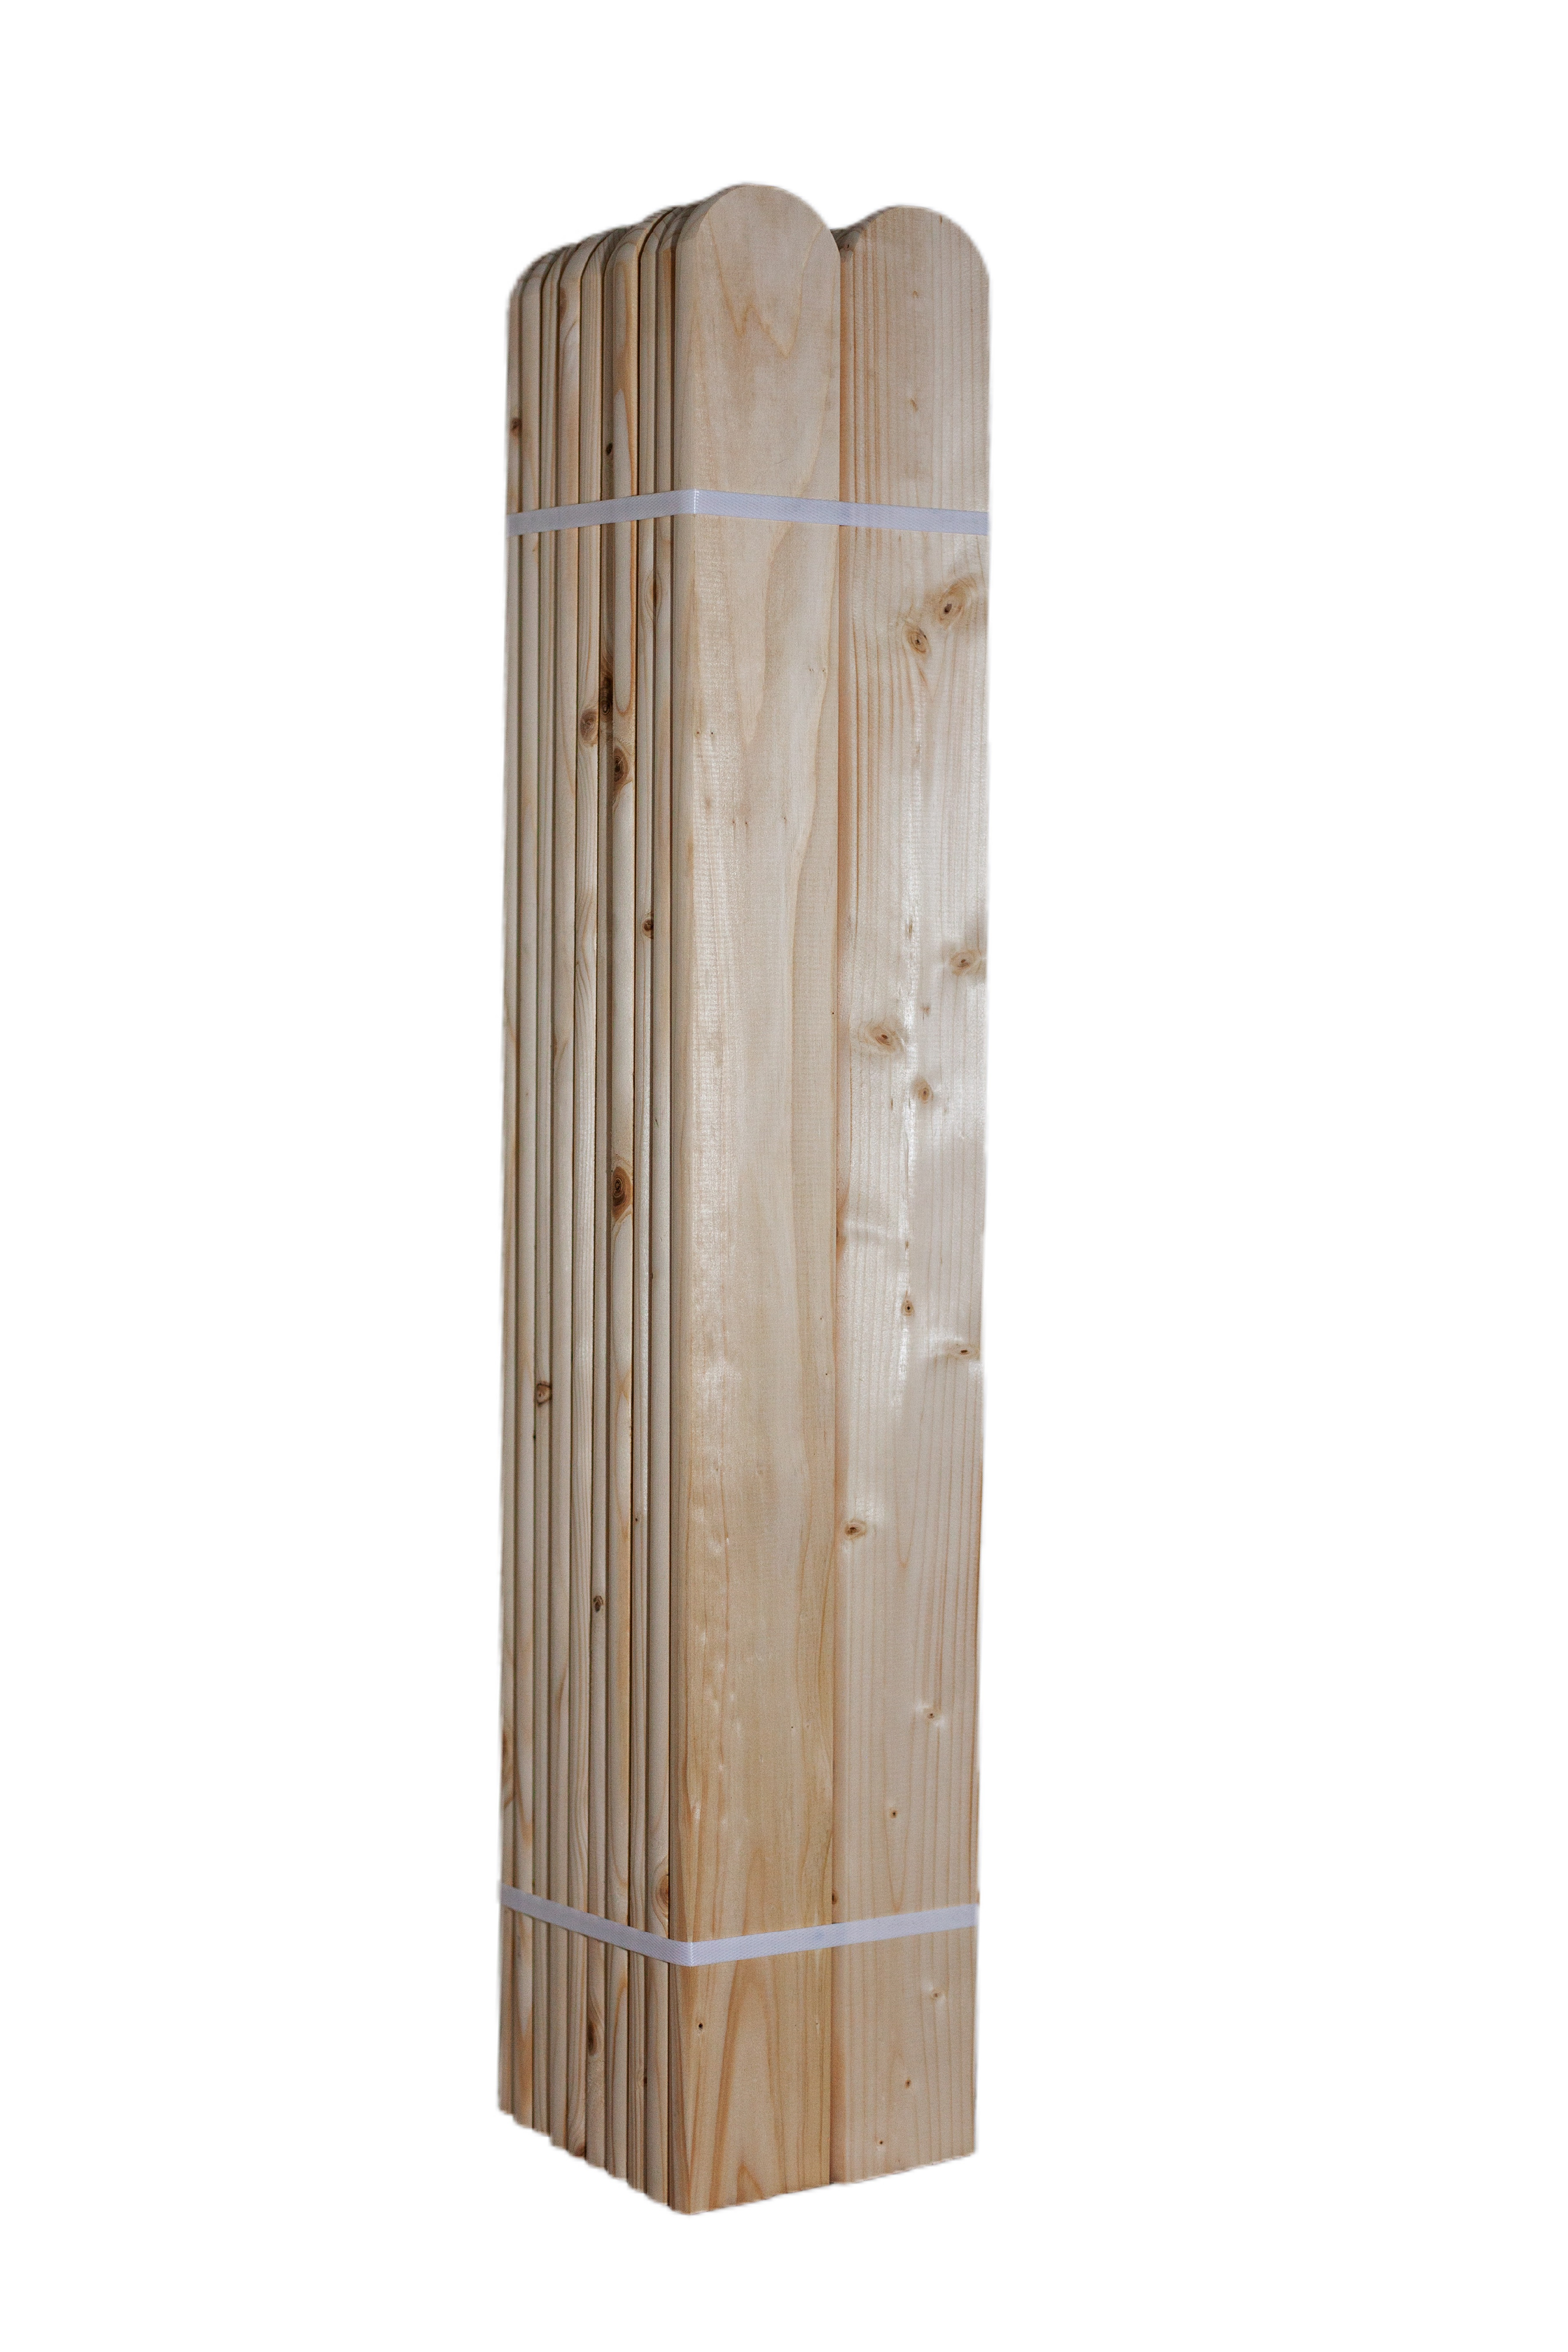 LC Dřevěná smrková plotovka, 20 x 90 mm zakulacená 1ks Výška plotovek: 70 cm